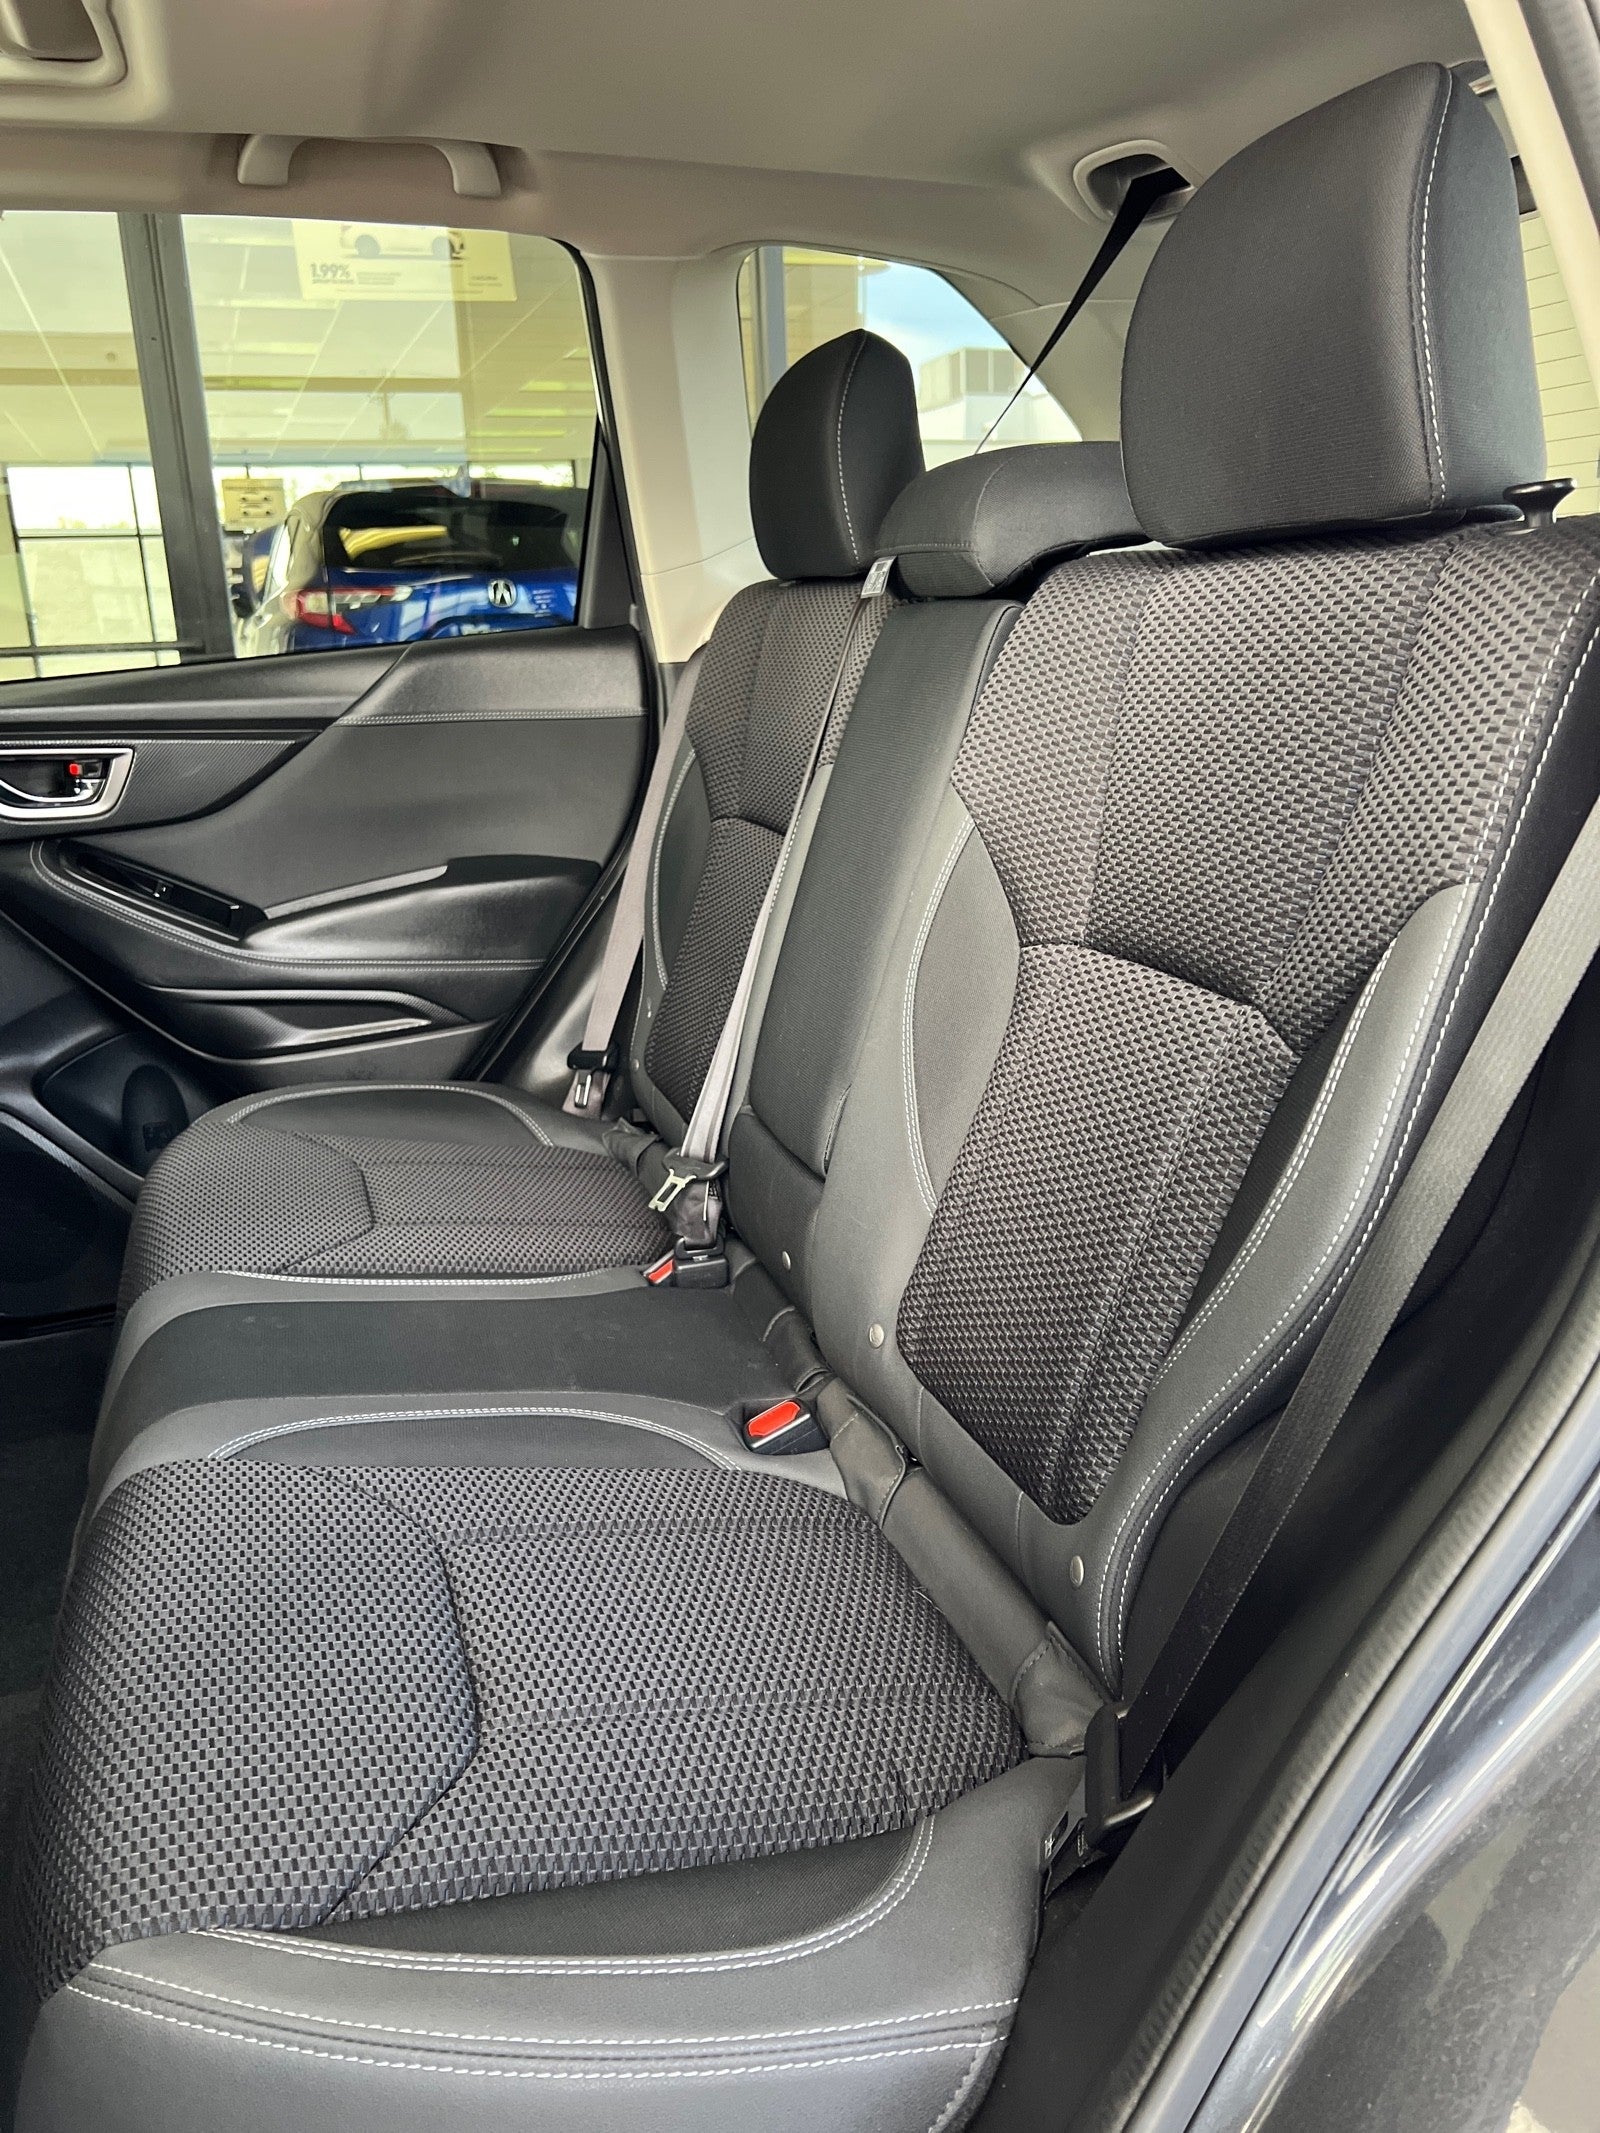 2019 Subaru Forester Premium